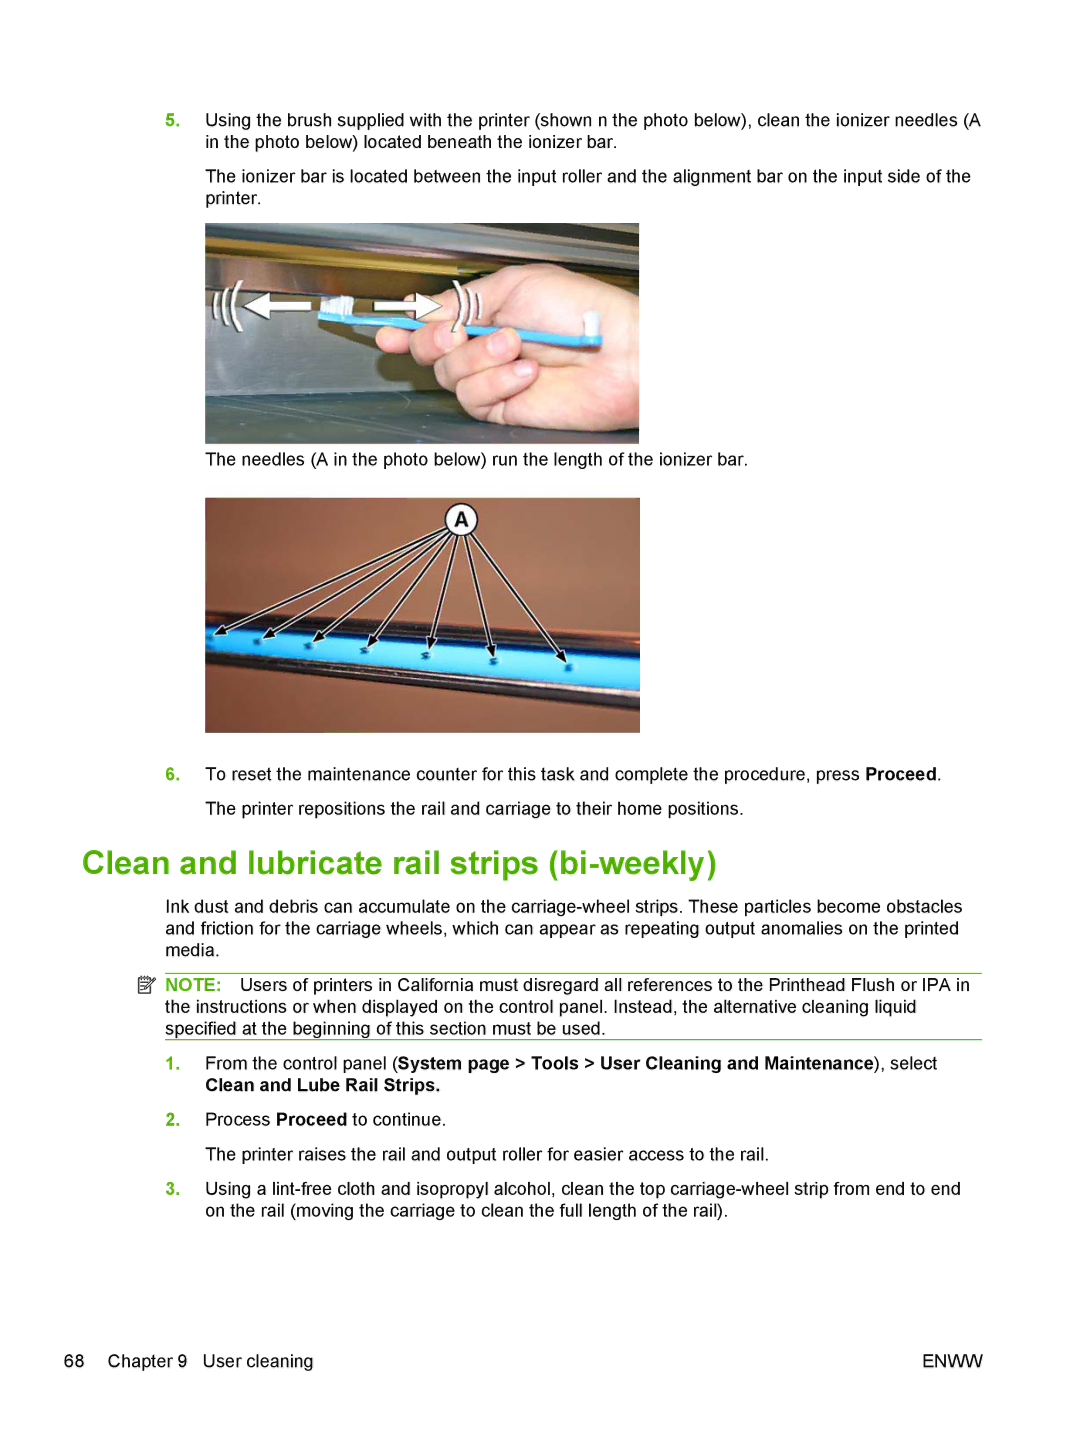 HP Scitex FB700 Industrial manual Clean and lubricate rail strips bi-weekly 